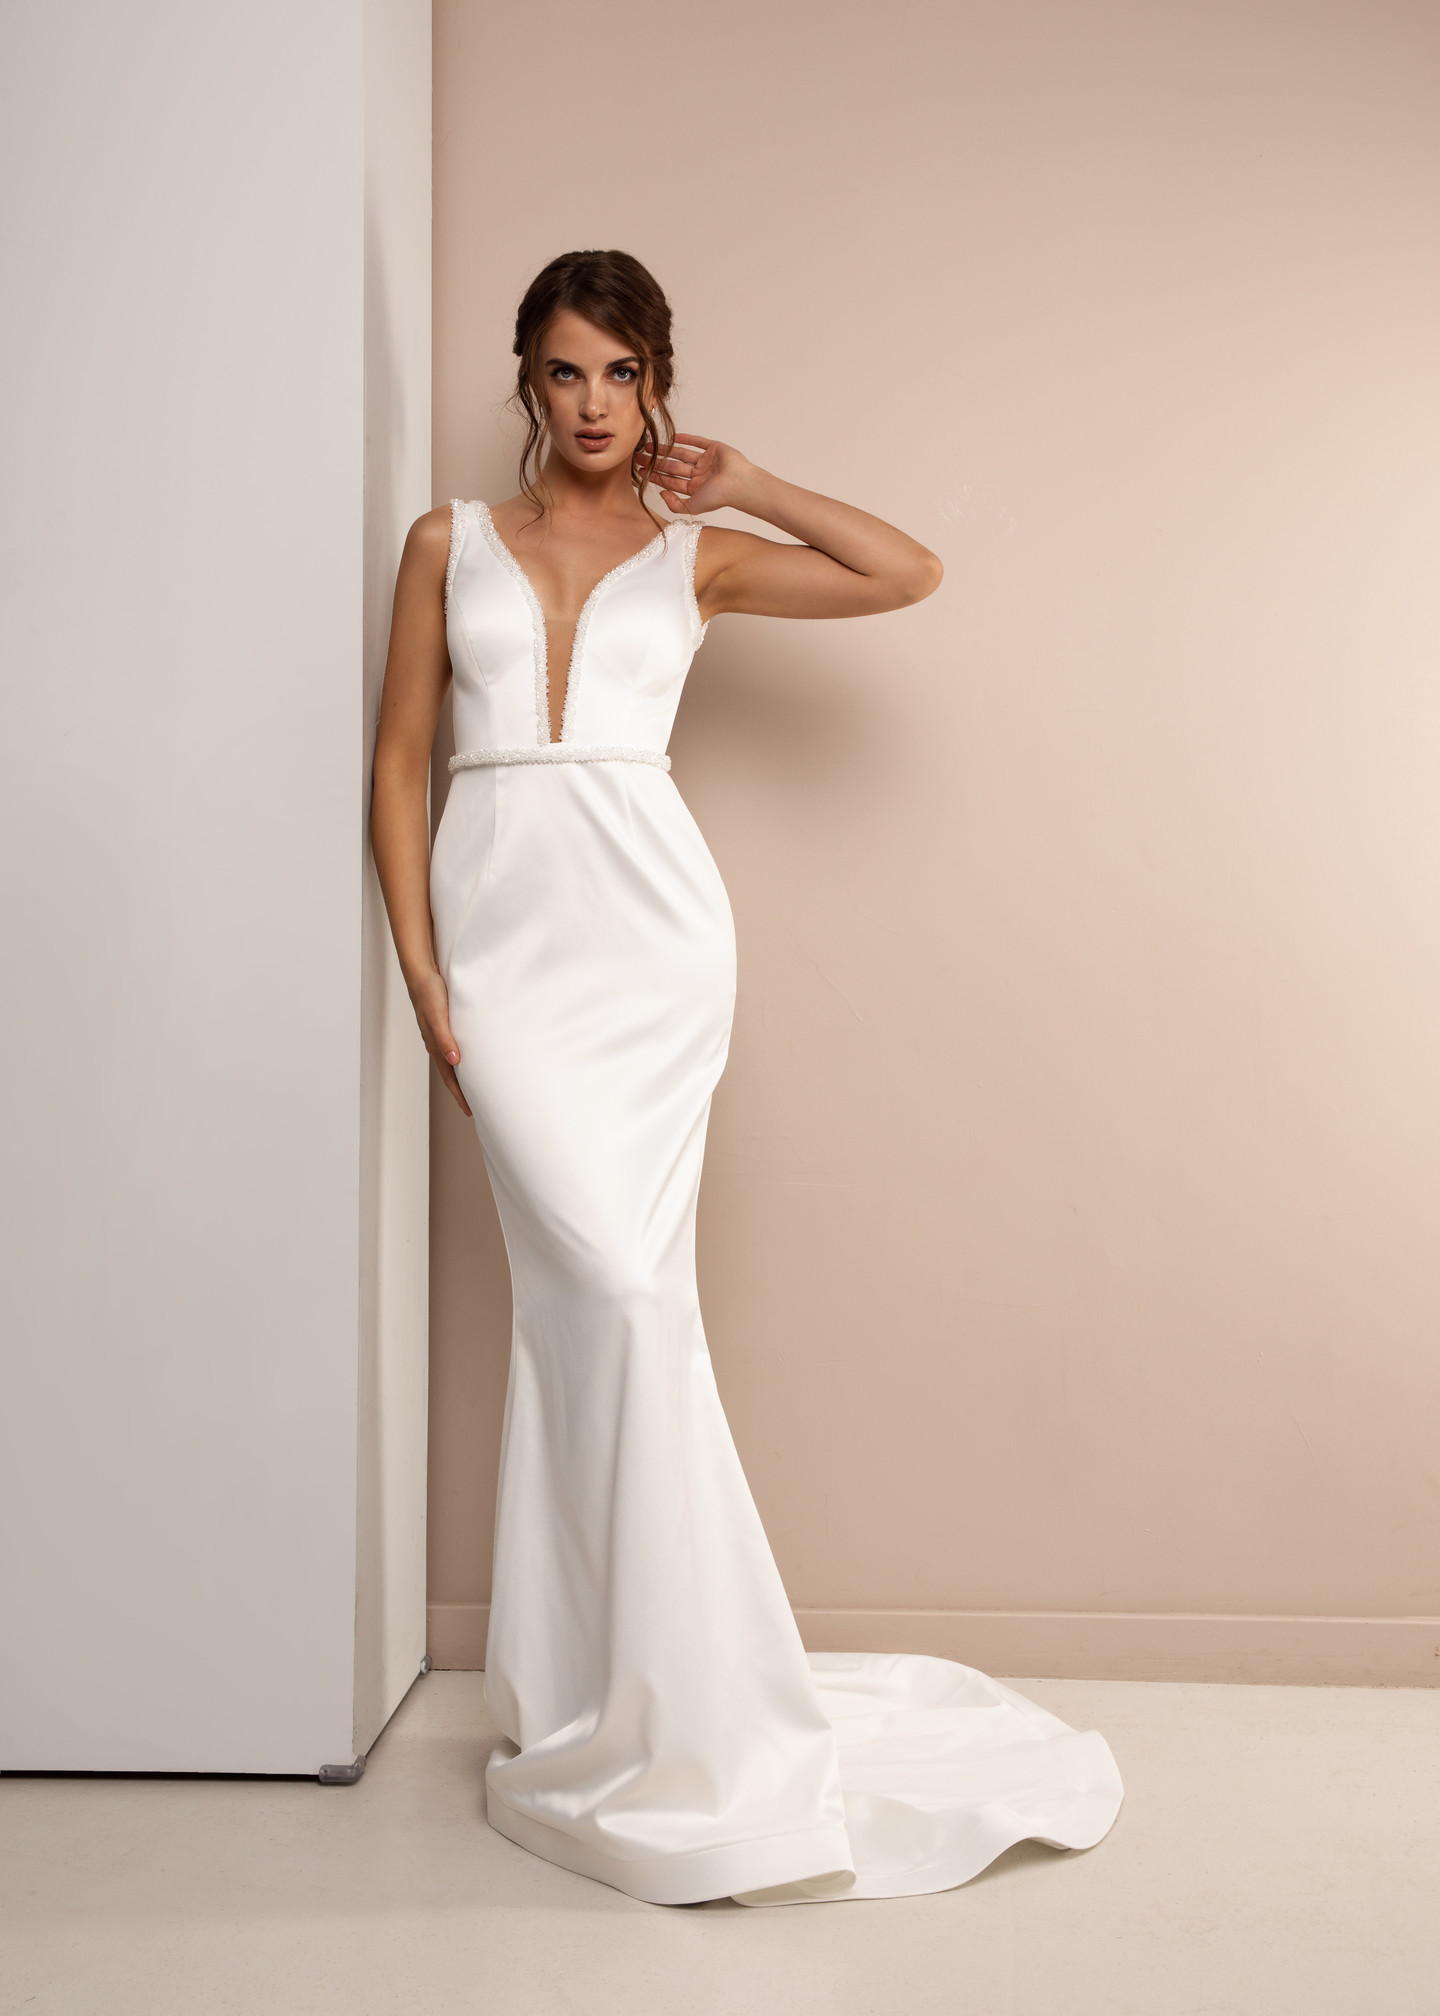 Платье Микелла, 2021, одежда, платье, свадебное, молочно-белый, Микелла, вышивка, прямой силуэт, шлейф